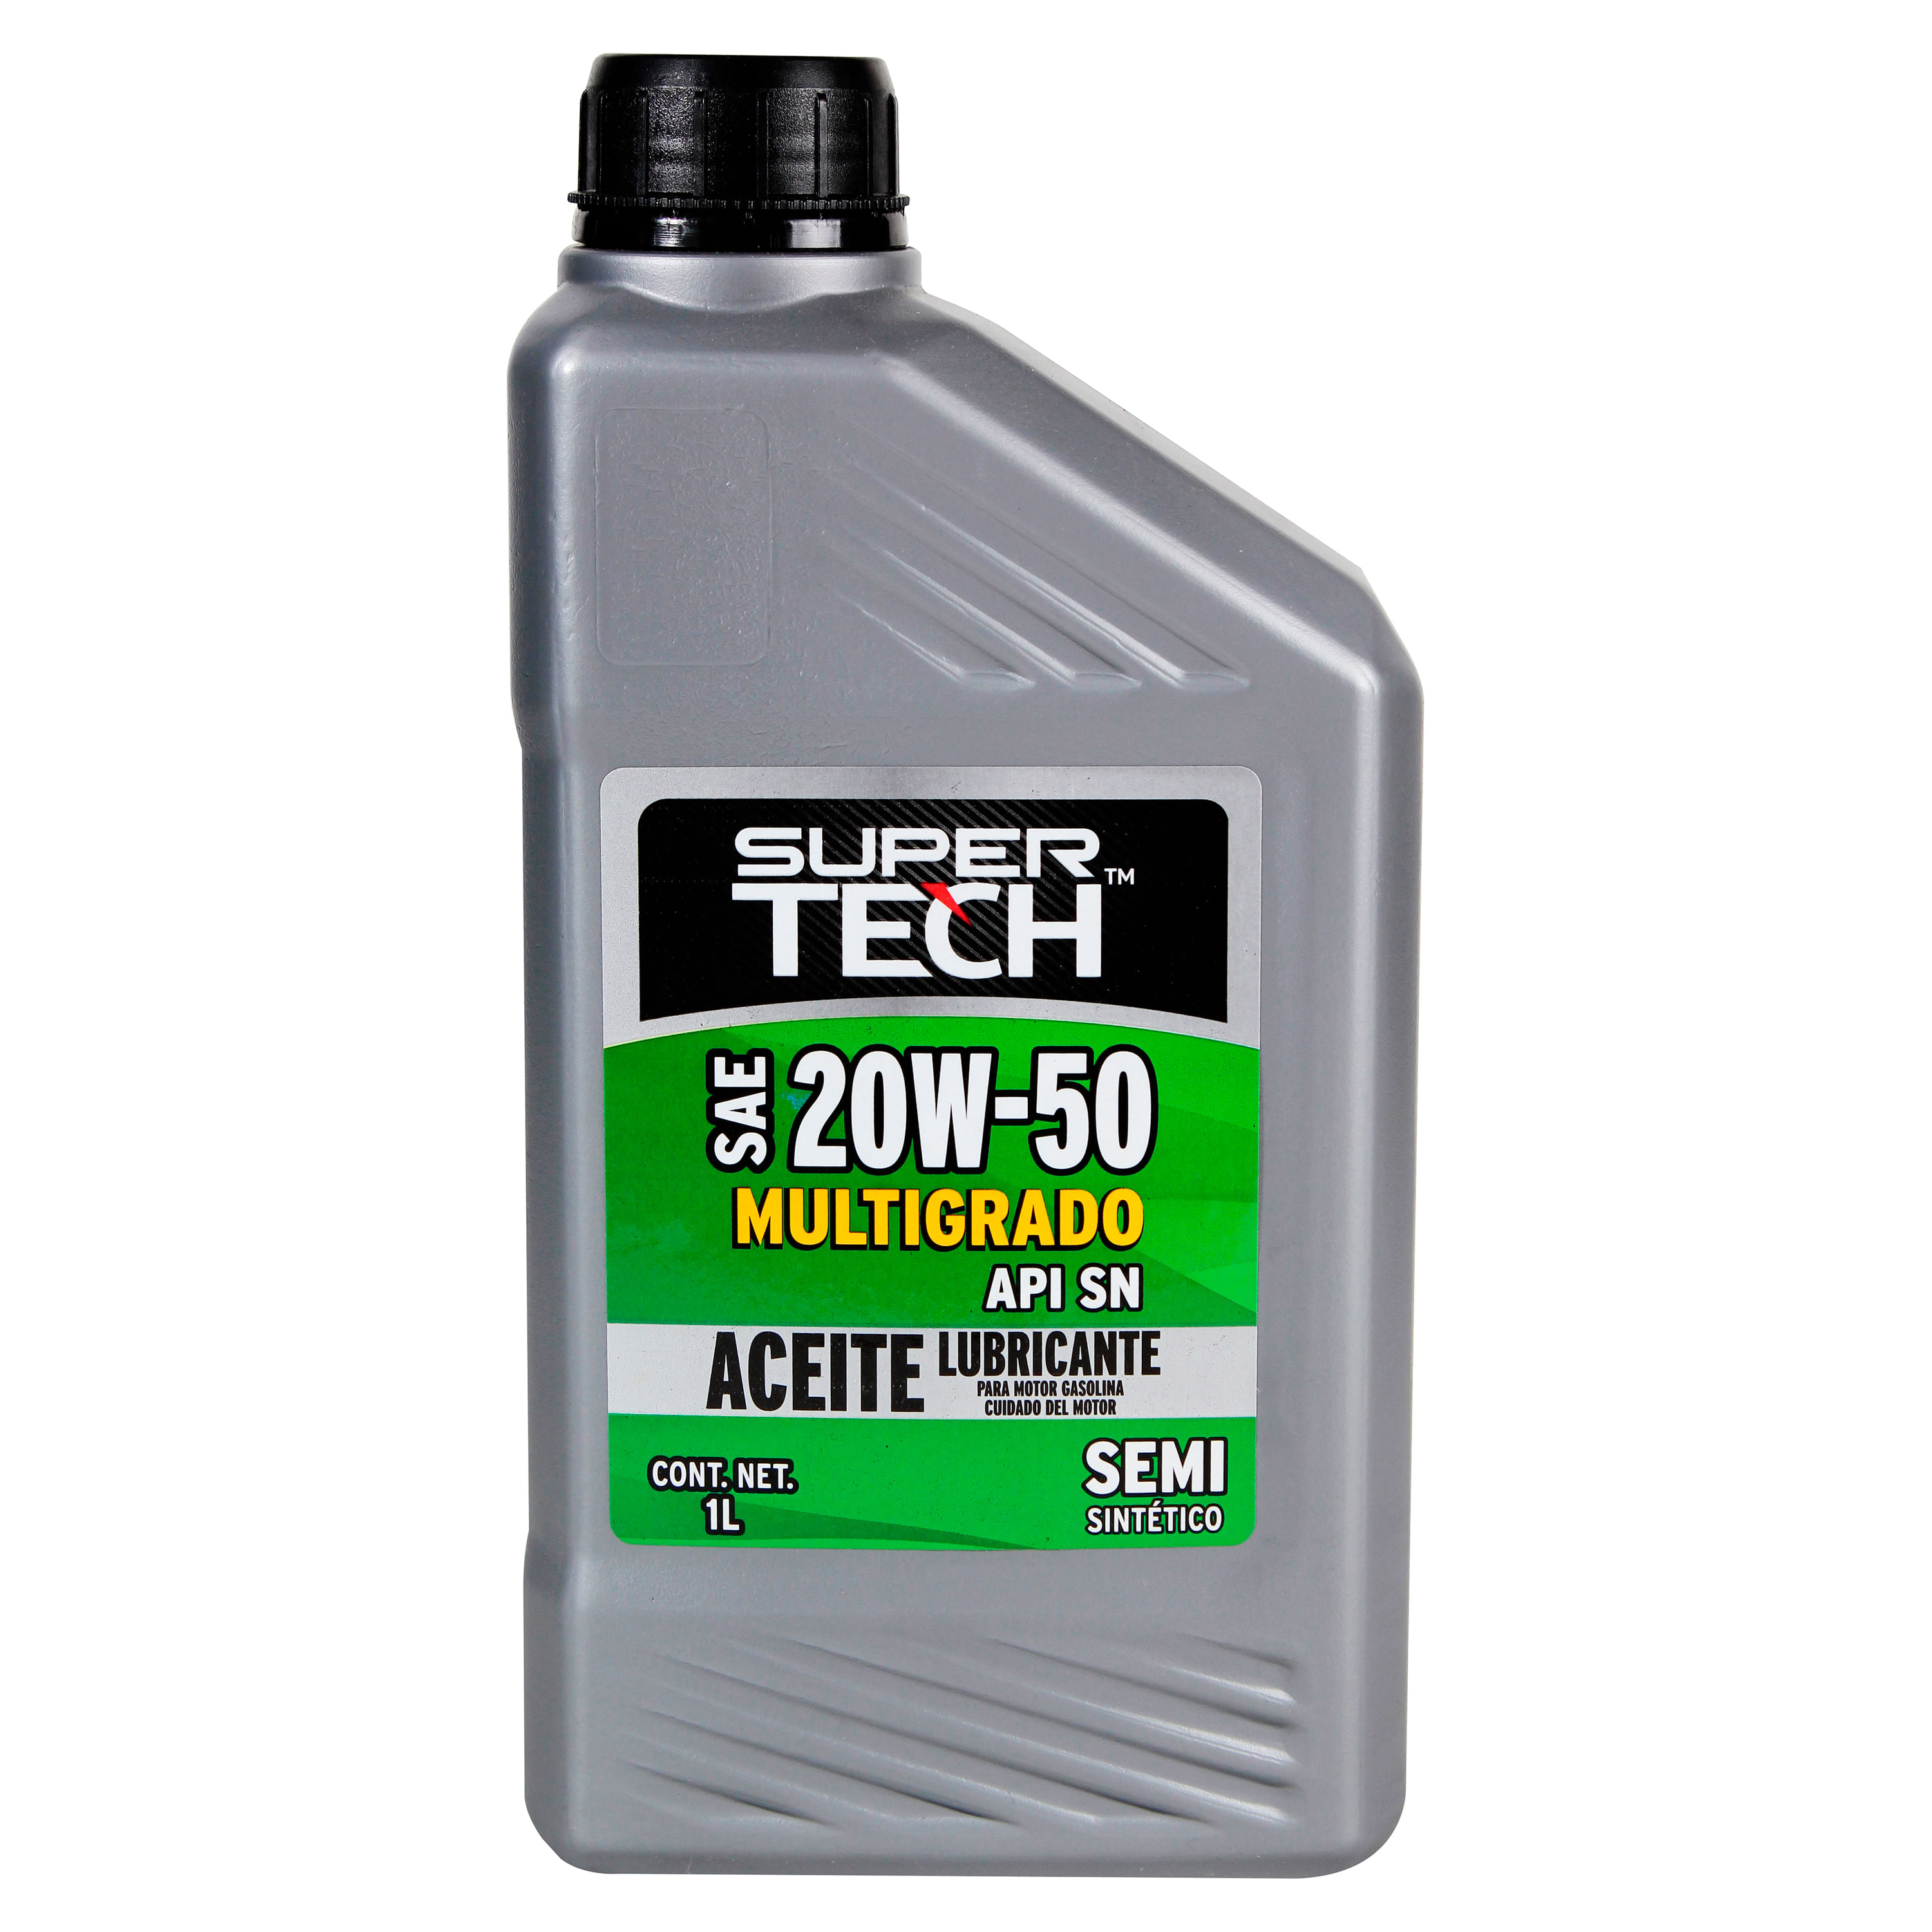 Aceite-Supertech-20W50-Semi-Sintetico-1L-1-30606